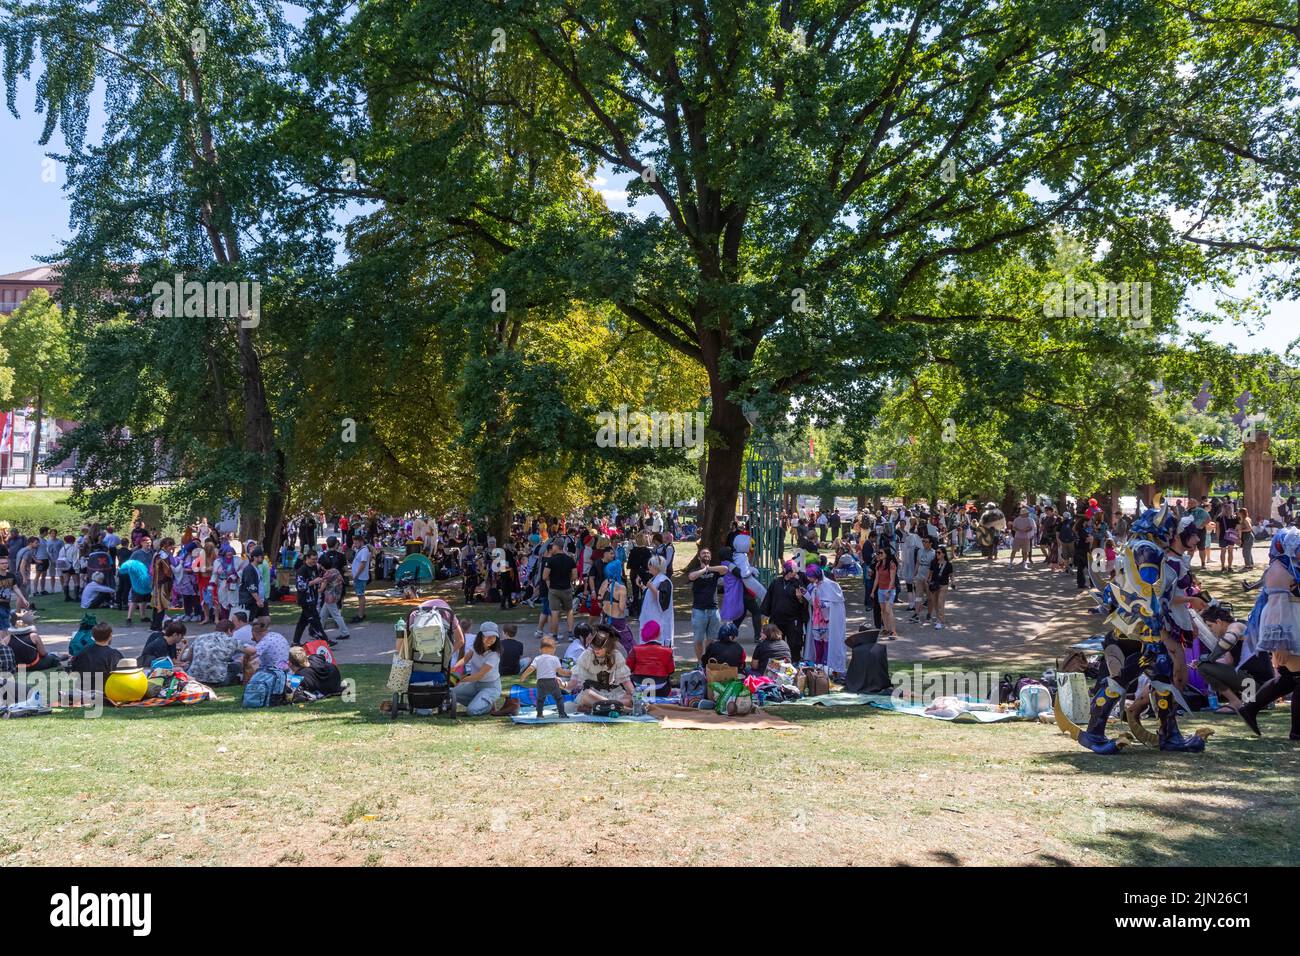 La vue des familles bondées campant dans le parc lors d'une journée ensoleillée Banque D'Images